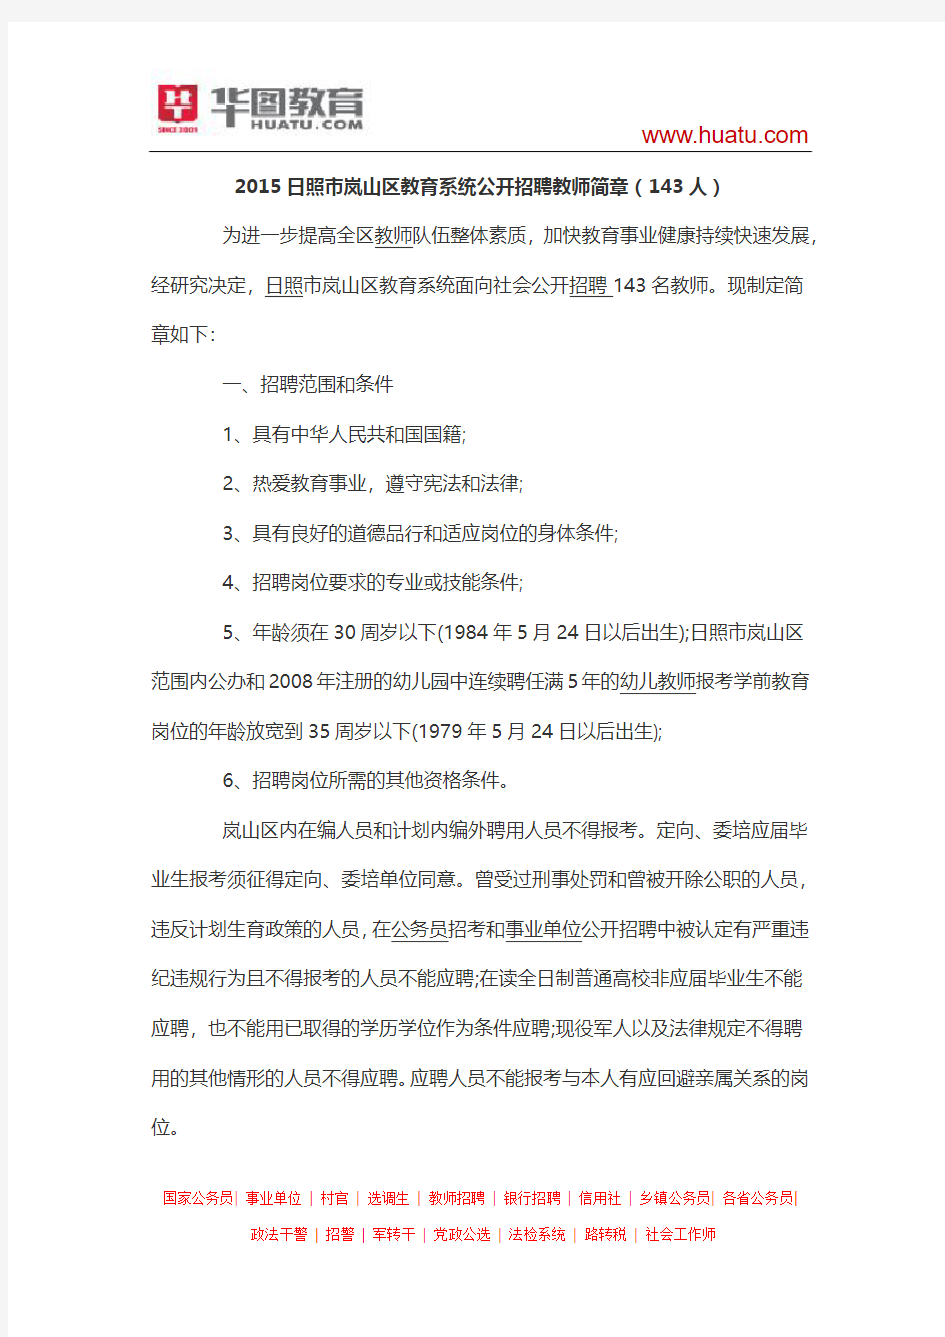 2015日照市岚山区教育系统公开招聘教师简章(143人)